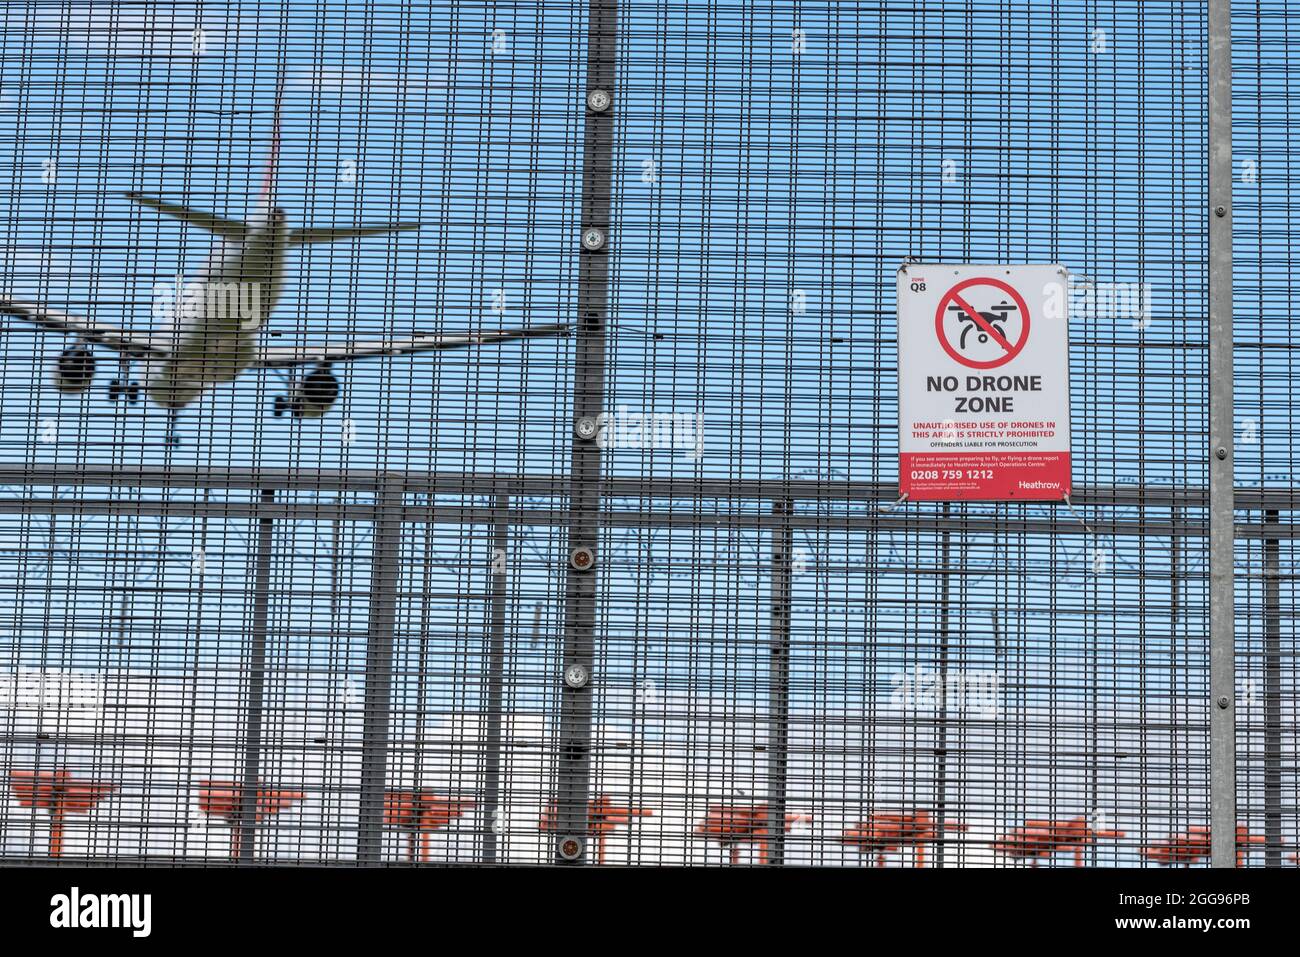 Kein Drohnenschild am Flughafen London Heathrow, Großbritannien, mit einem Flugzeug, das dahinter landet. Warnschild Umzäunung. Kein unbefugtes Fliegen mit einer Drohne Stockfoto